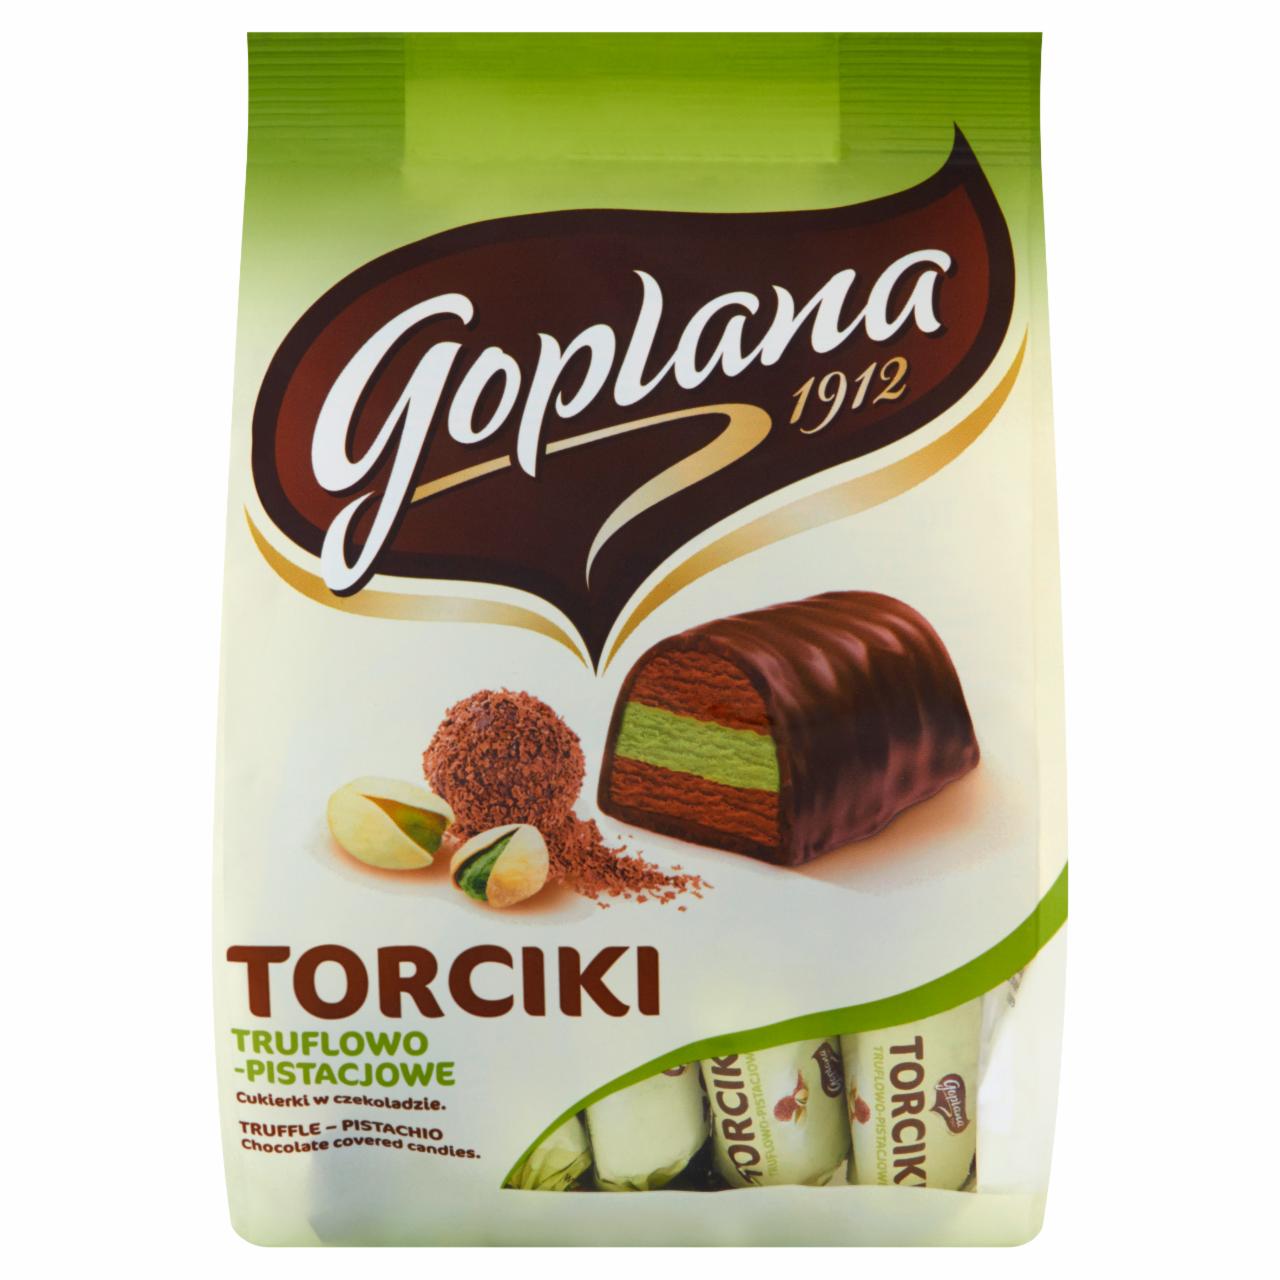 Zdjęcia - Goplana Torciki truflowo-pistacjowe Cukierki w czekoladzie 256 g